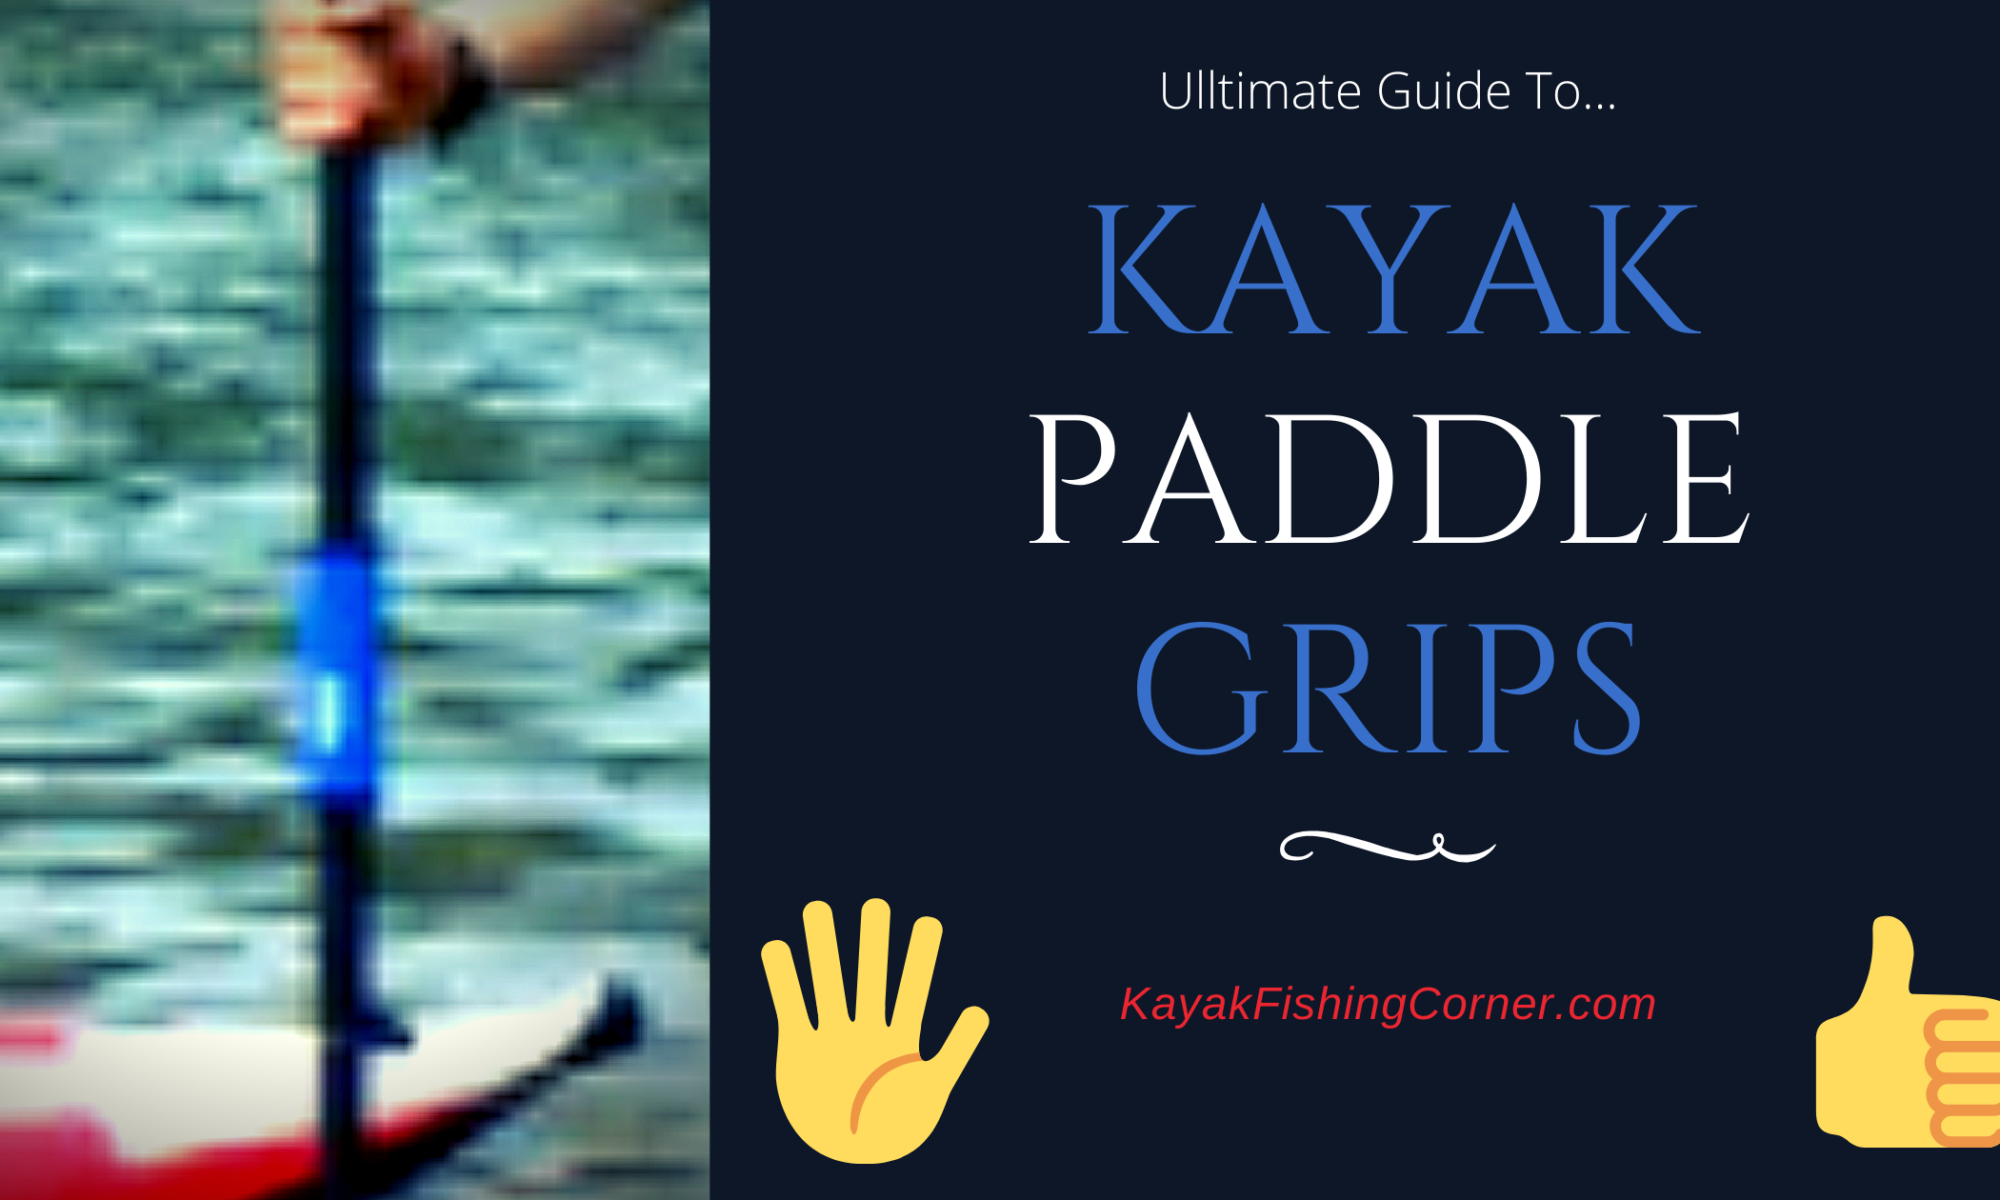 Kayak Paddle Grips